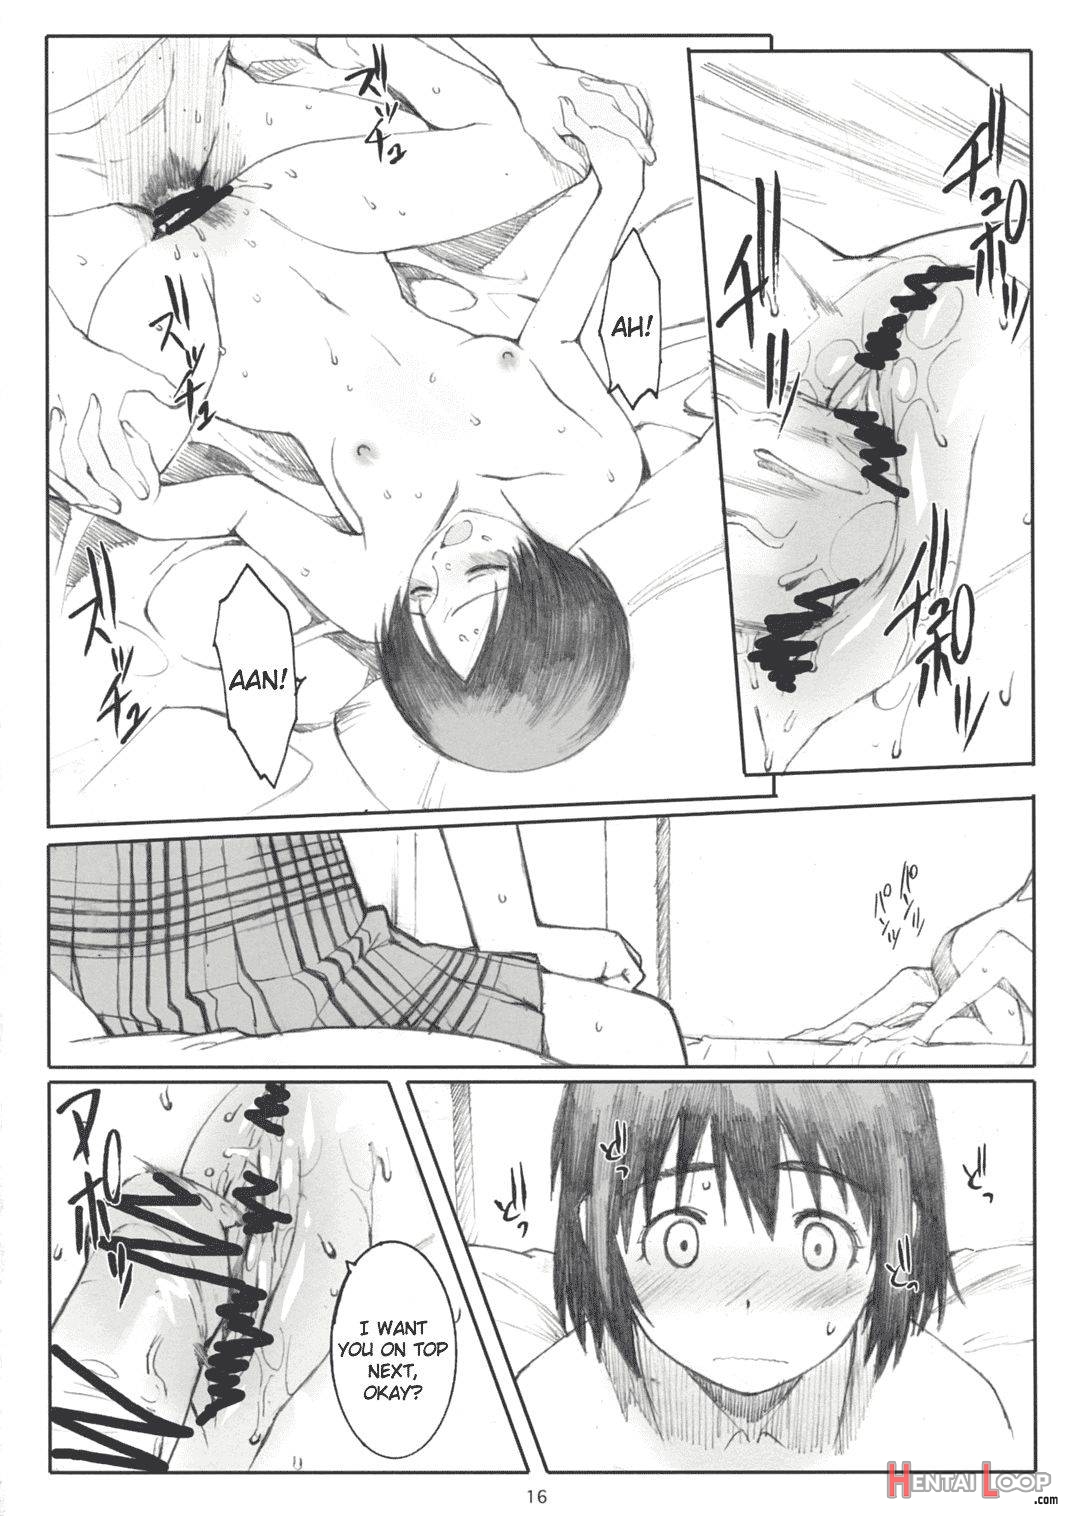 Natsukaze! 2 page 15